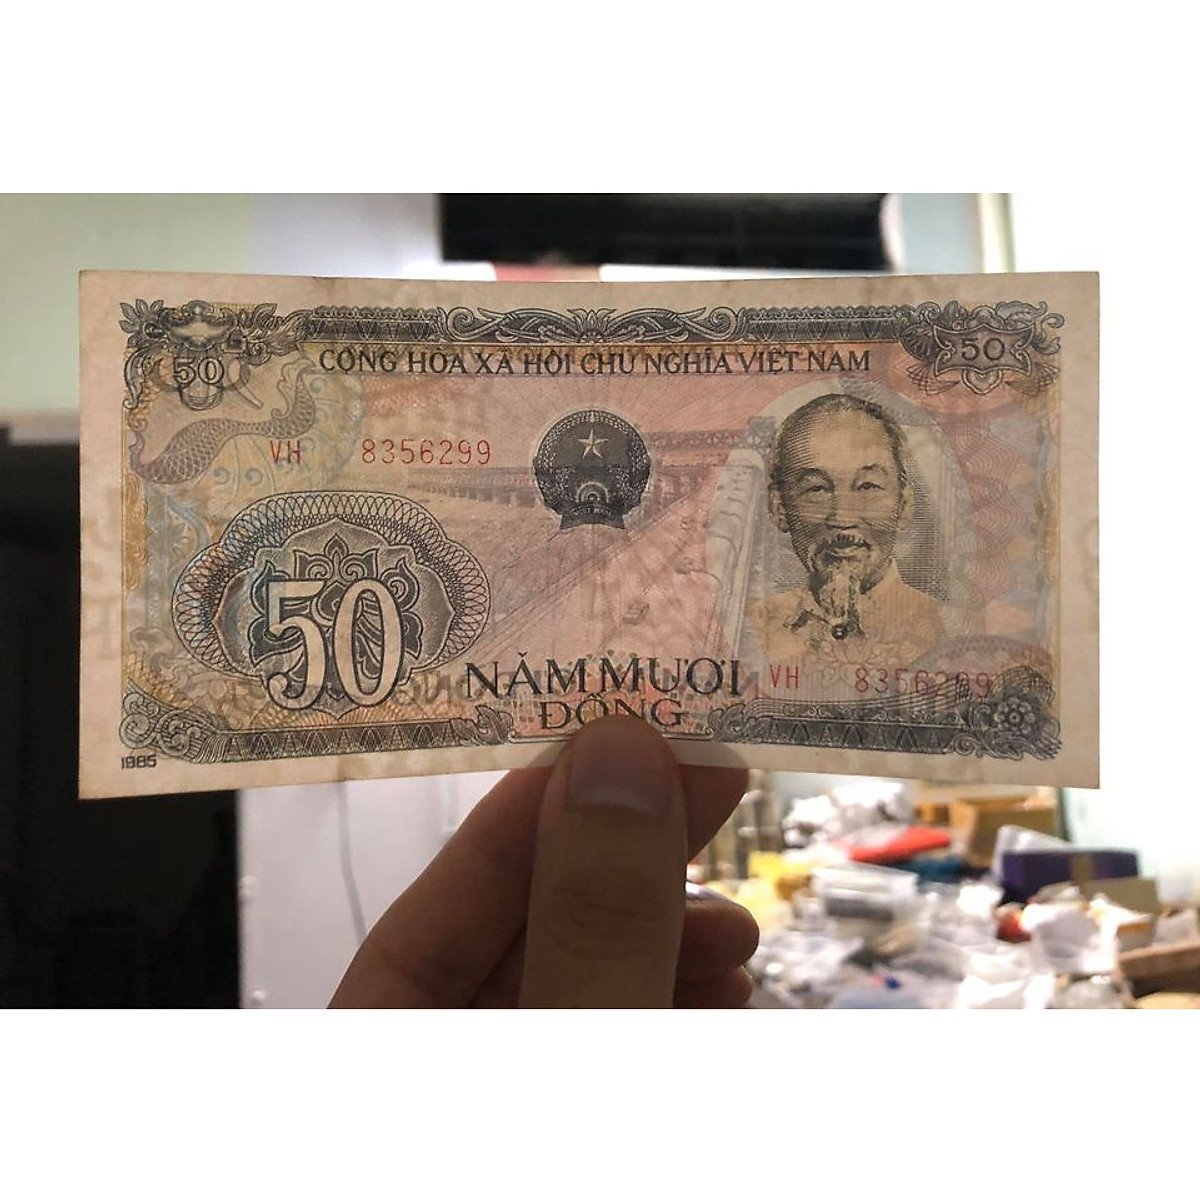 Tờ 50 đồng Việt Nam bao cấp, tiền cổ sưu tầm - Chất lượng như hình, Tiền xưa thật 100%